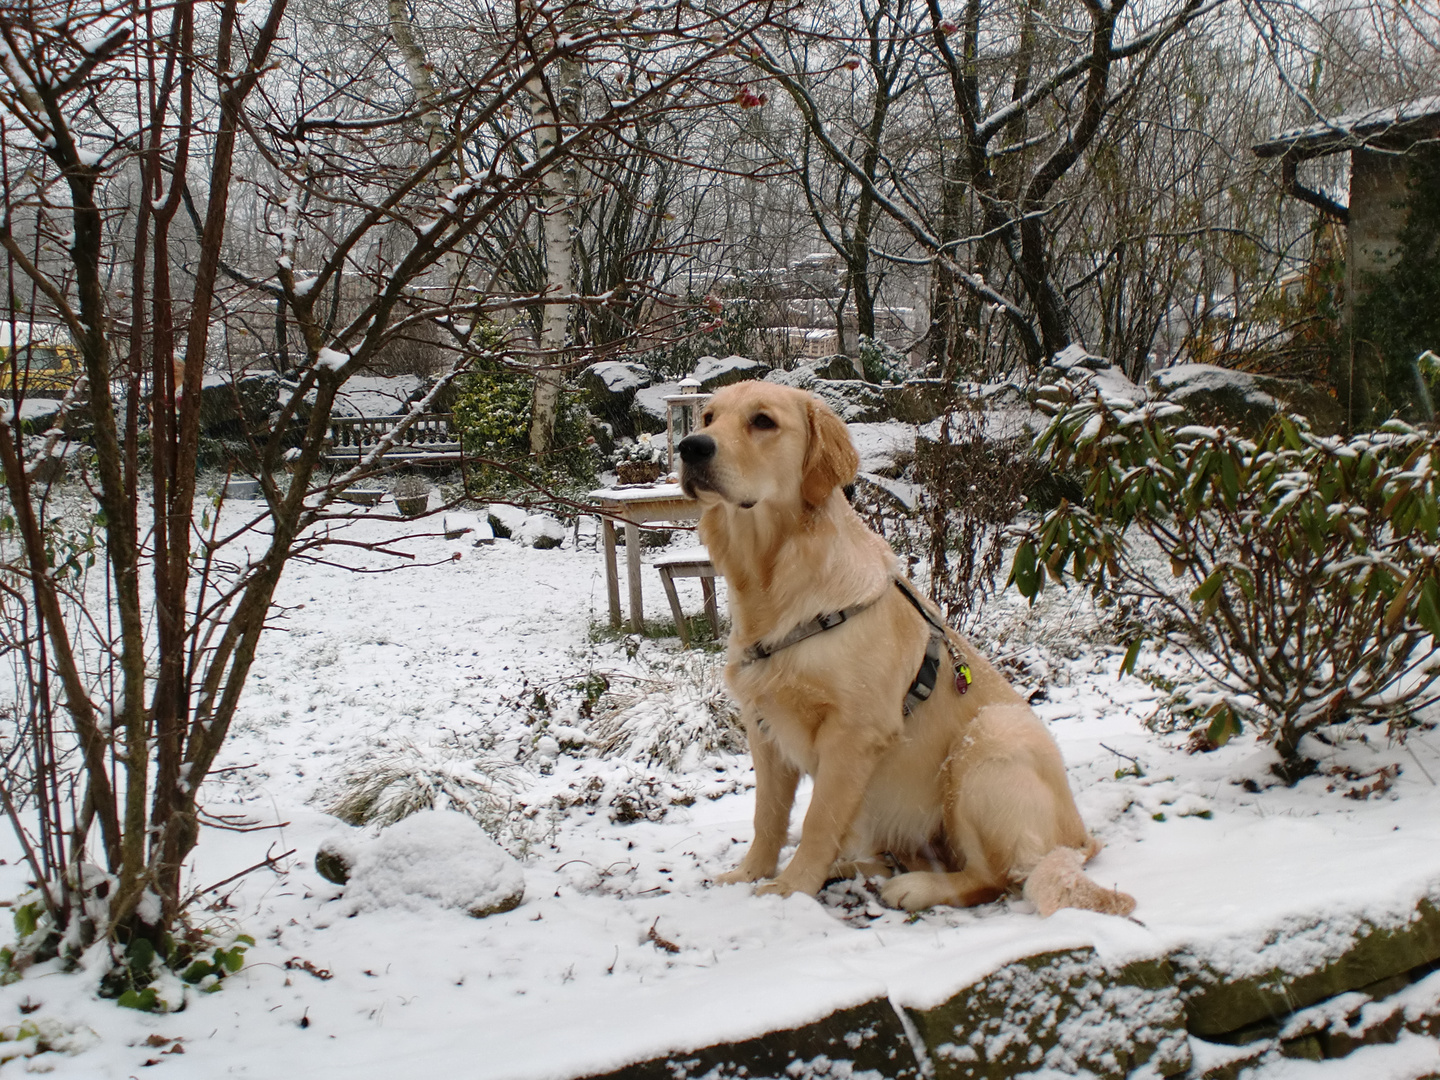 Paulas Staunen über ihren ersten Schnee.